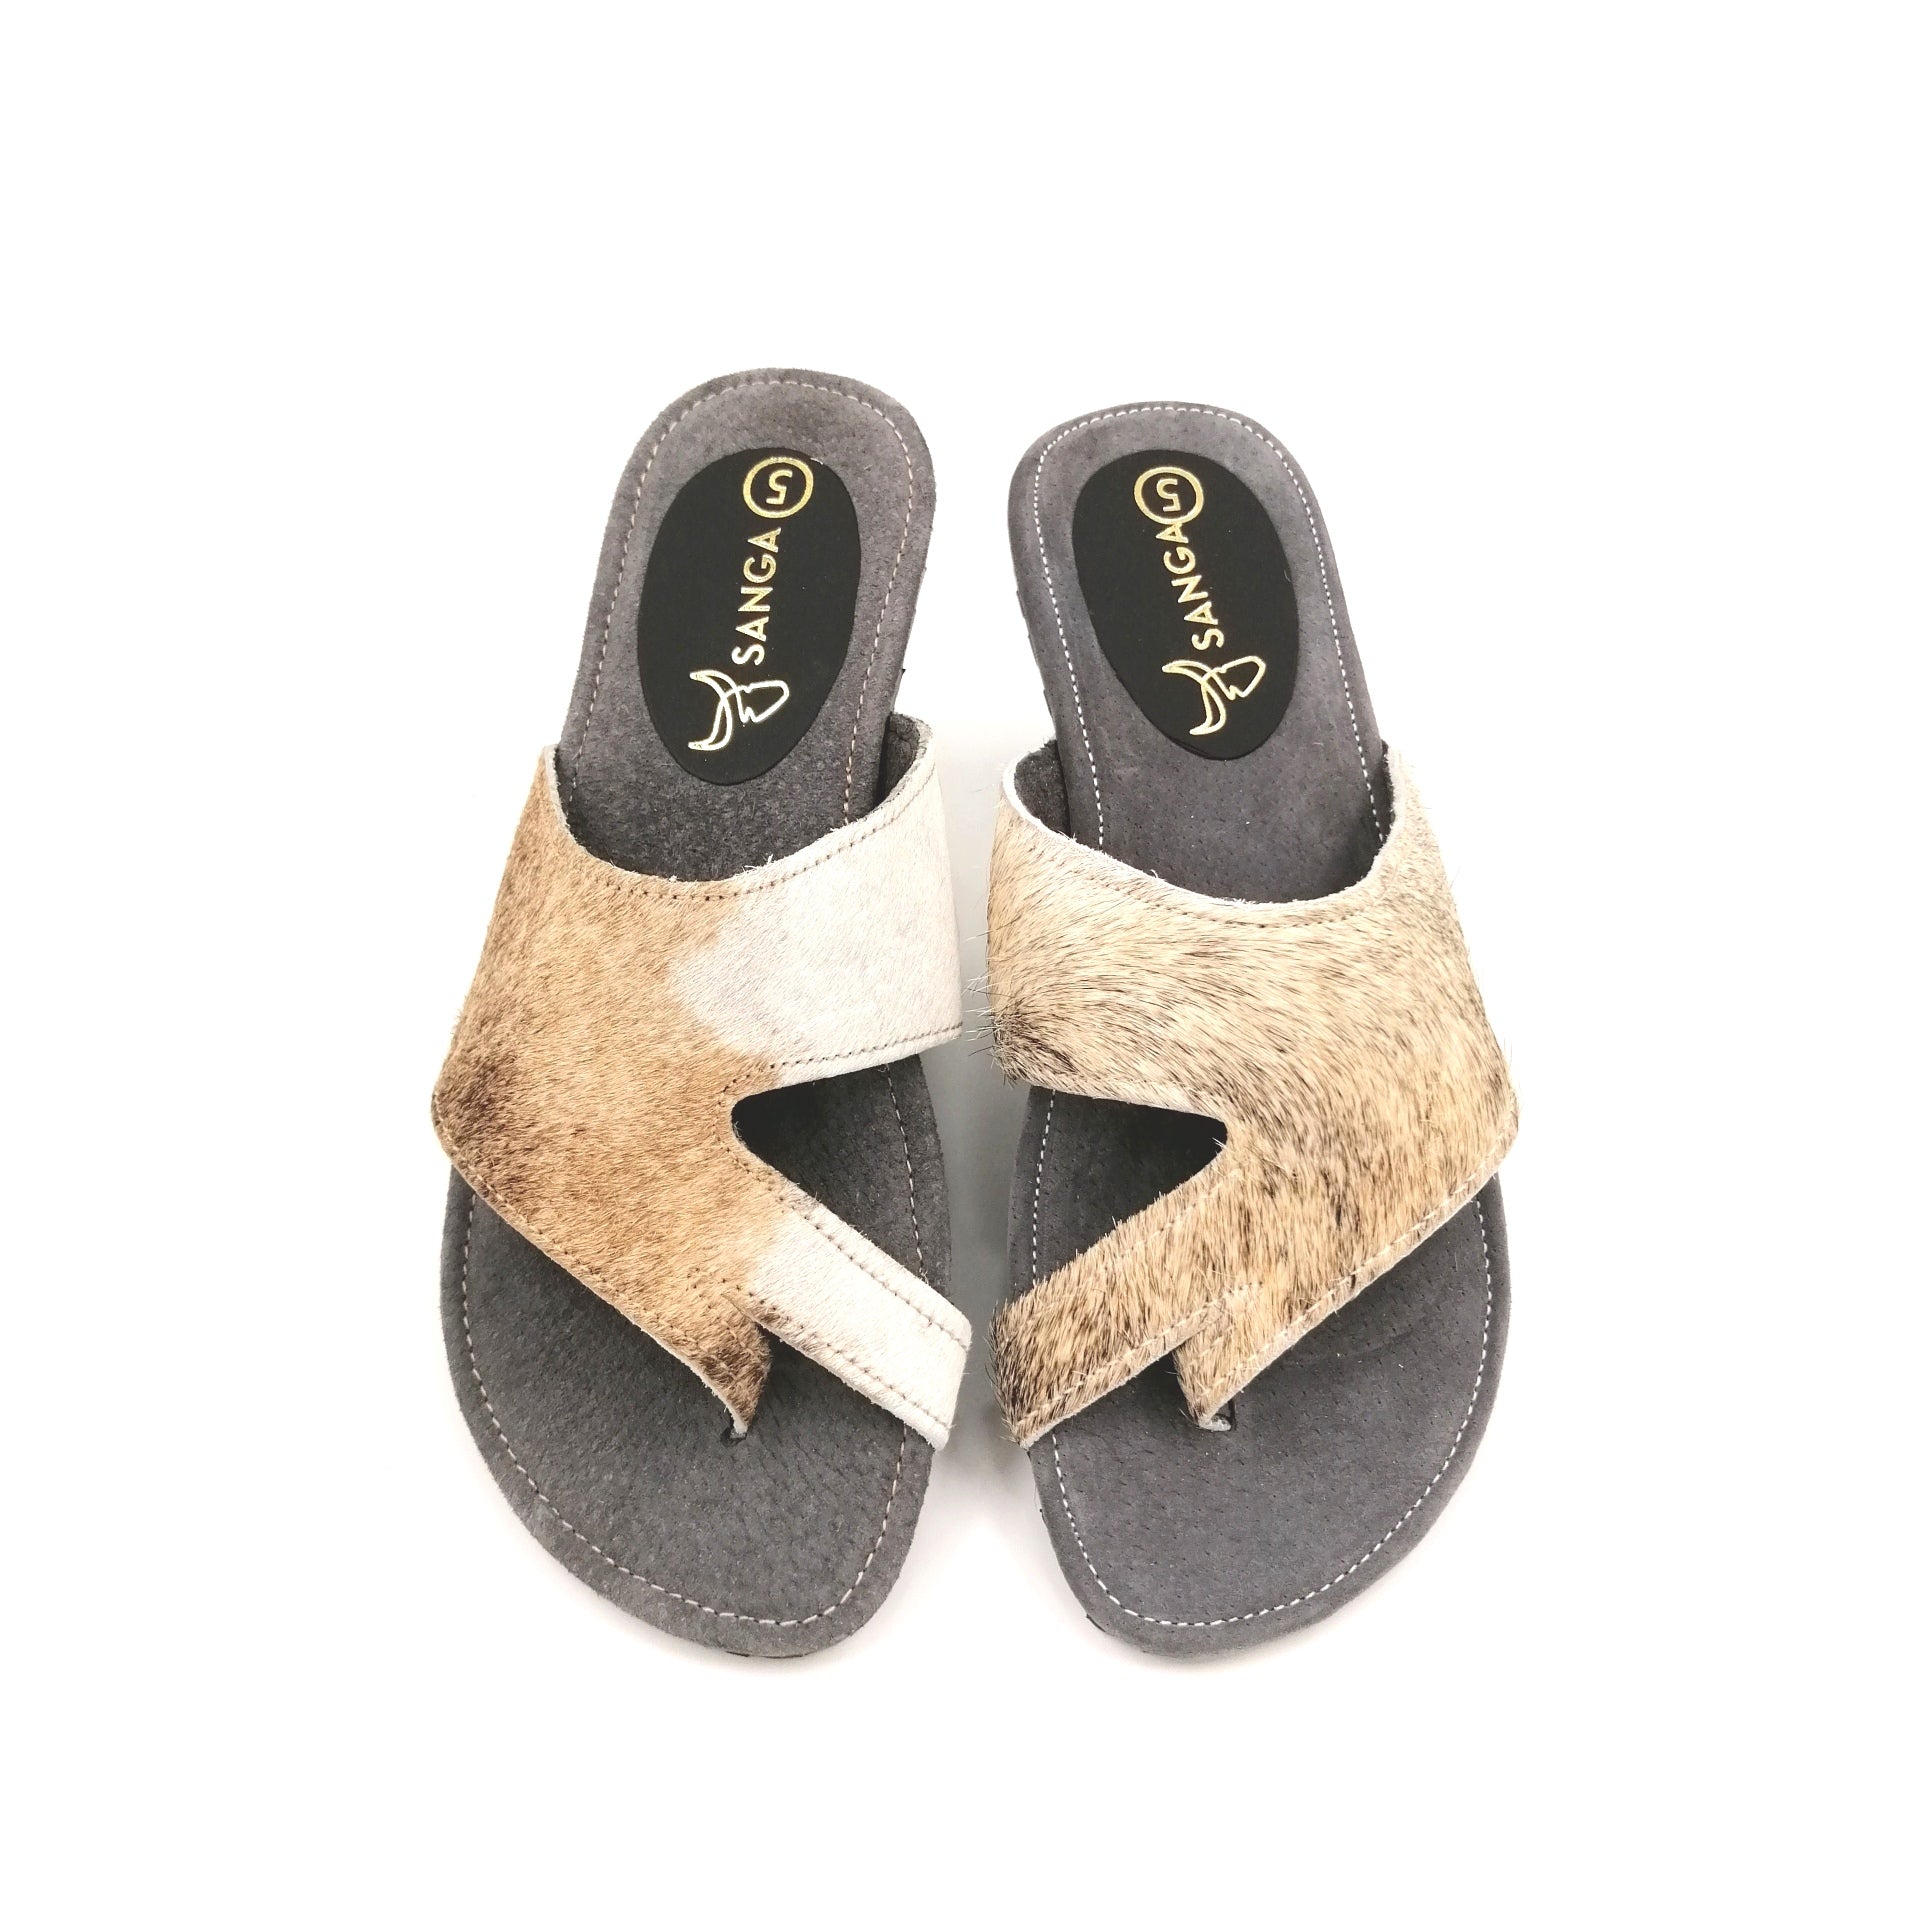 Sandals - SC20-SAN05-05 - Size 5